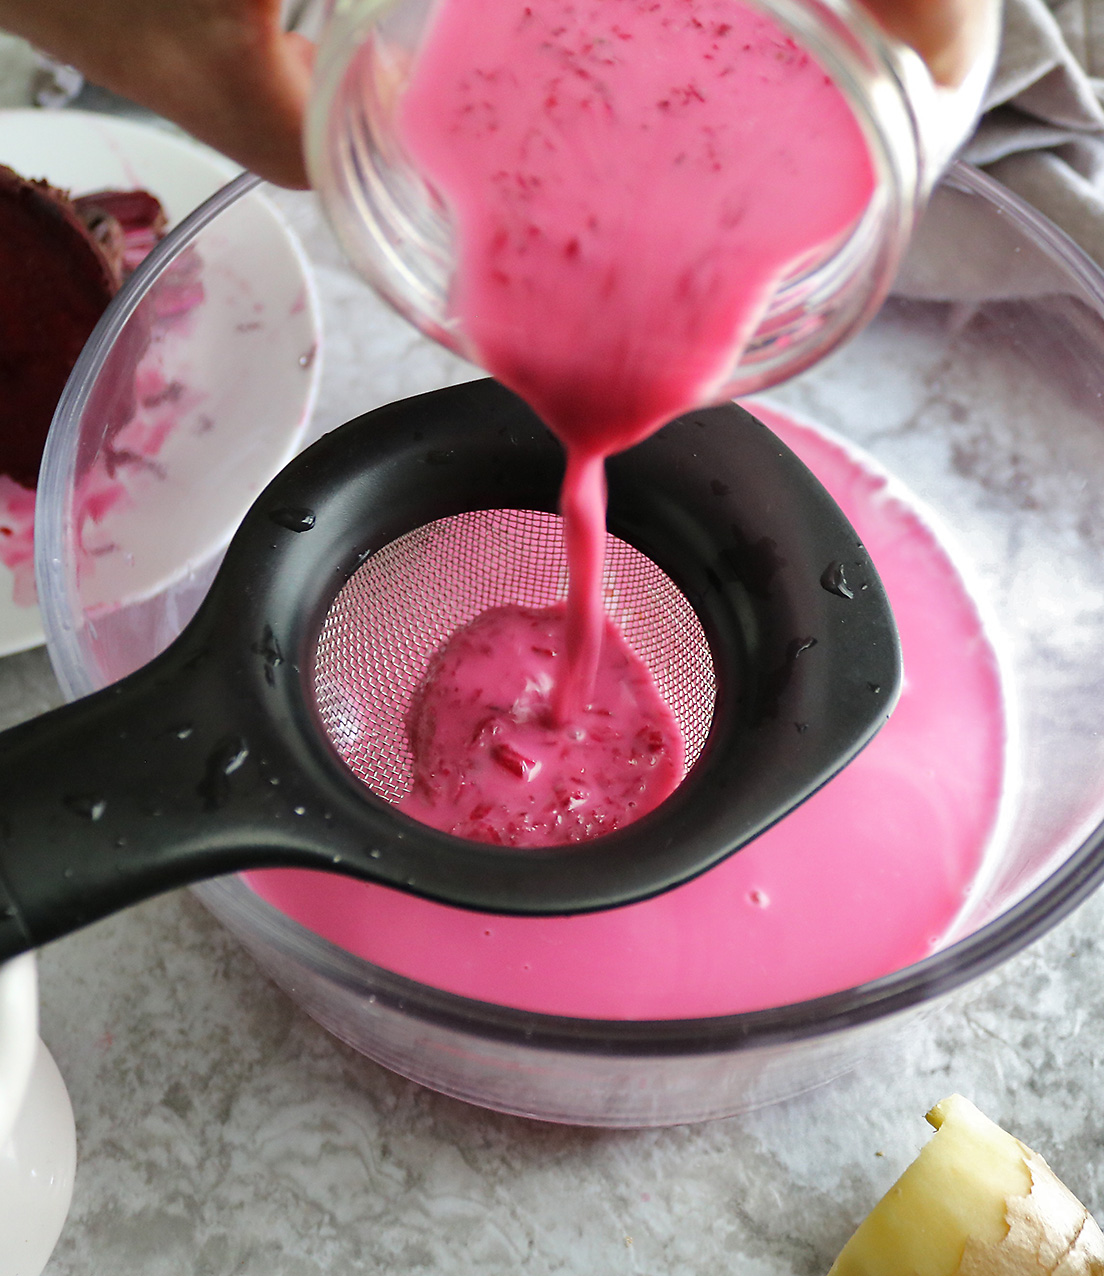 Straining beet milk to make pink chia pudding.